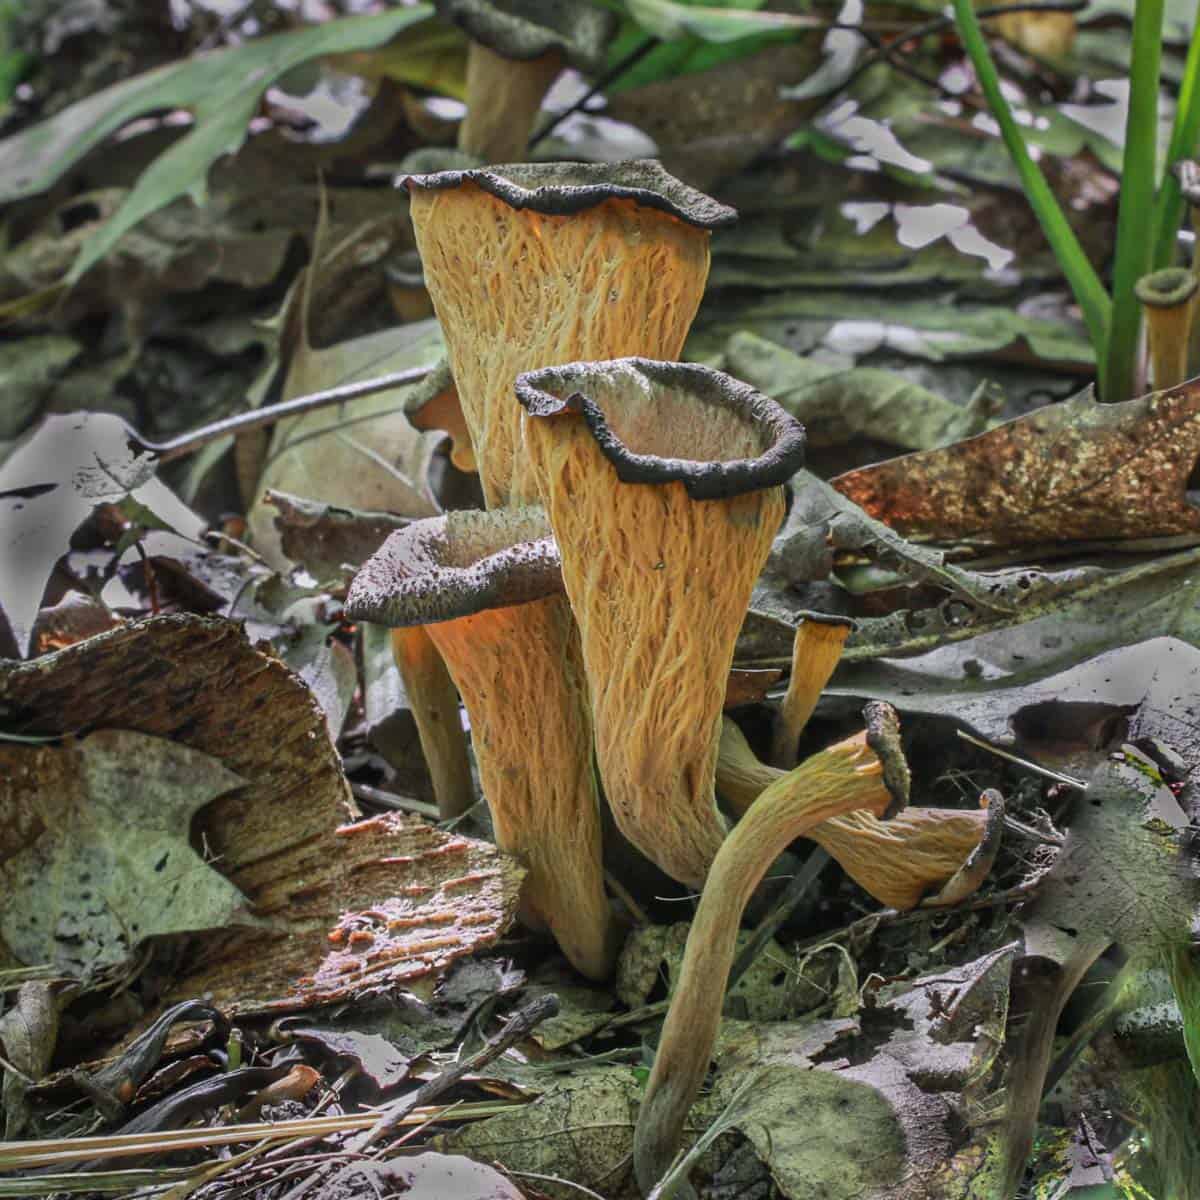 Black trumpet mushrooms or Craterellus fallax in the woods 